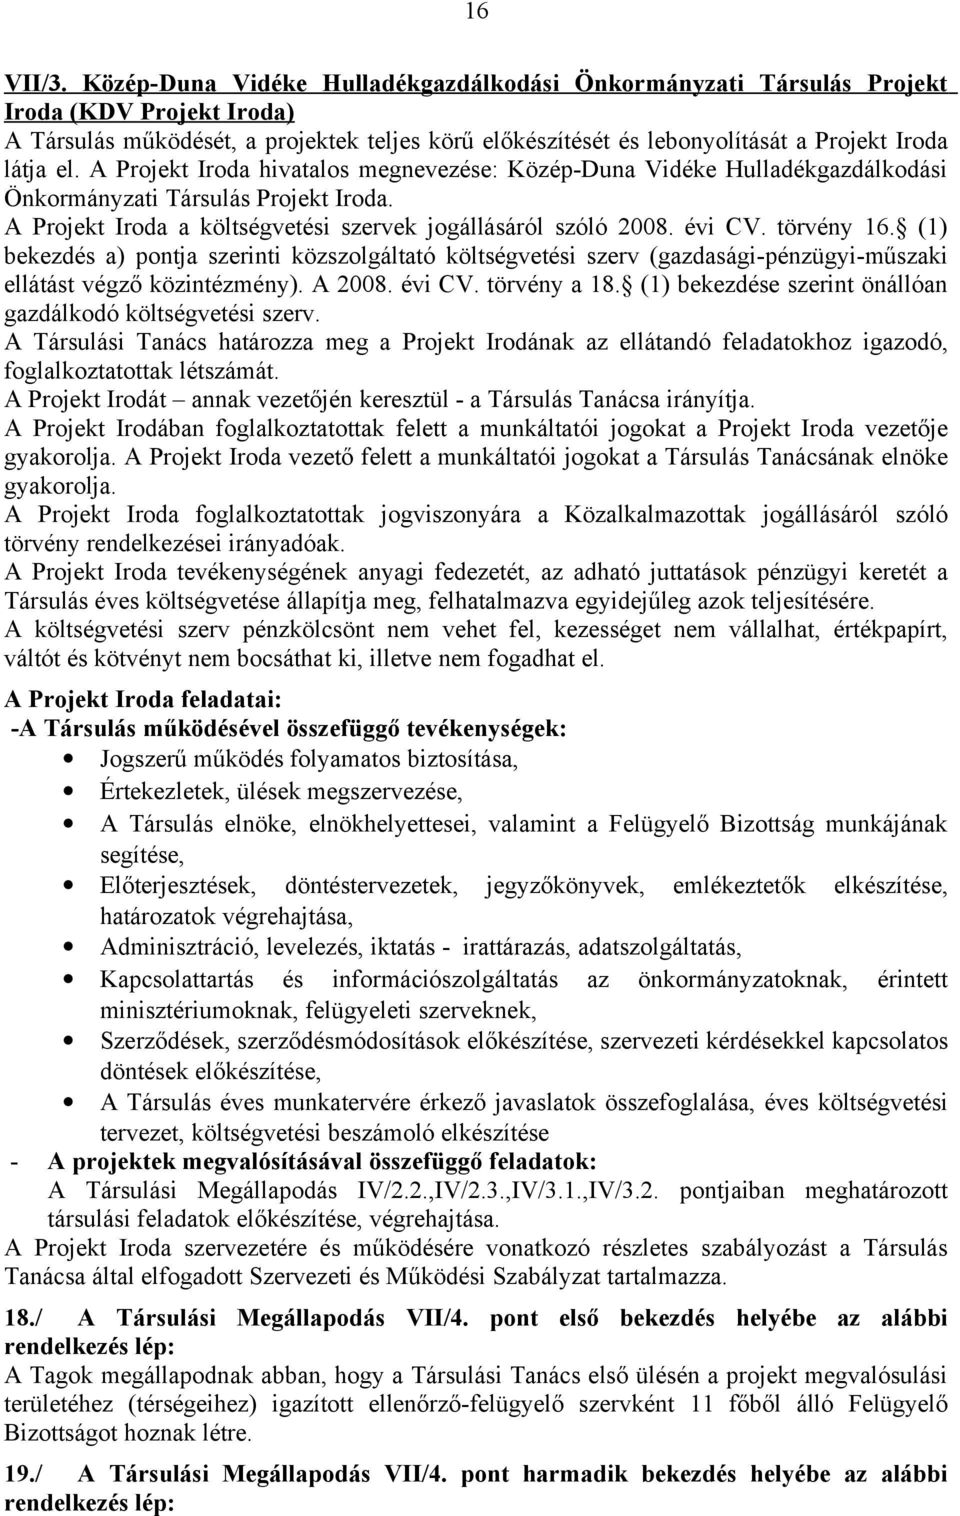 A Projekt Iroda hivatalos megnevezése: Közép-Duna Vidéke Hulladékgazdálkodási Önkormányzati Társulás Projekt Iroda. A Projekt Iroda a költségvetési szervek jogállásáról szóló 2008. évi CV. törvény 16.